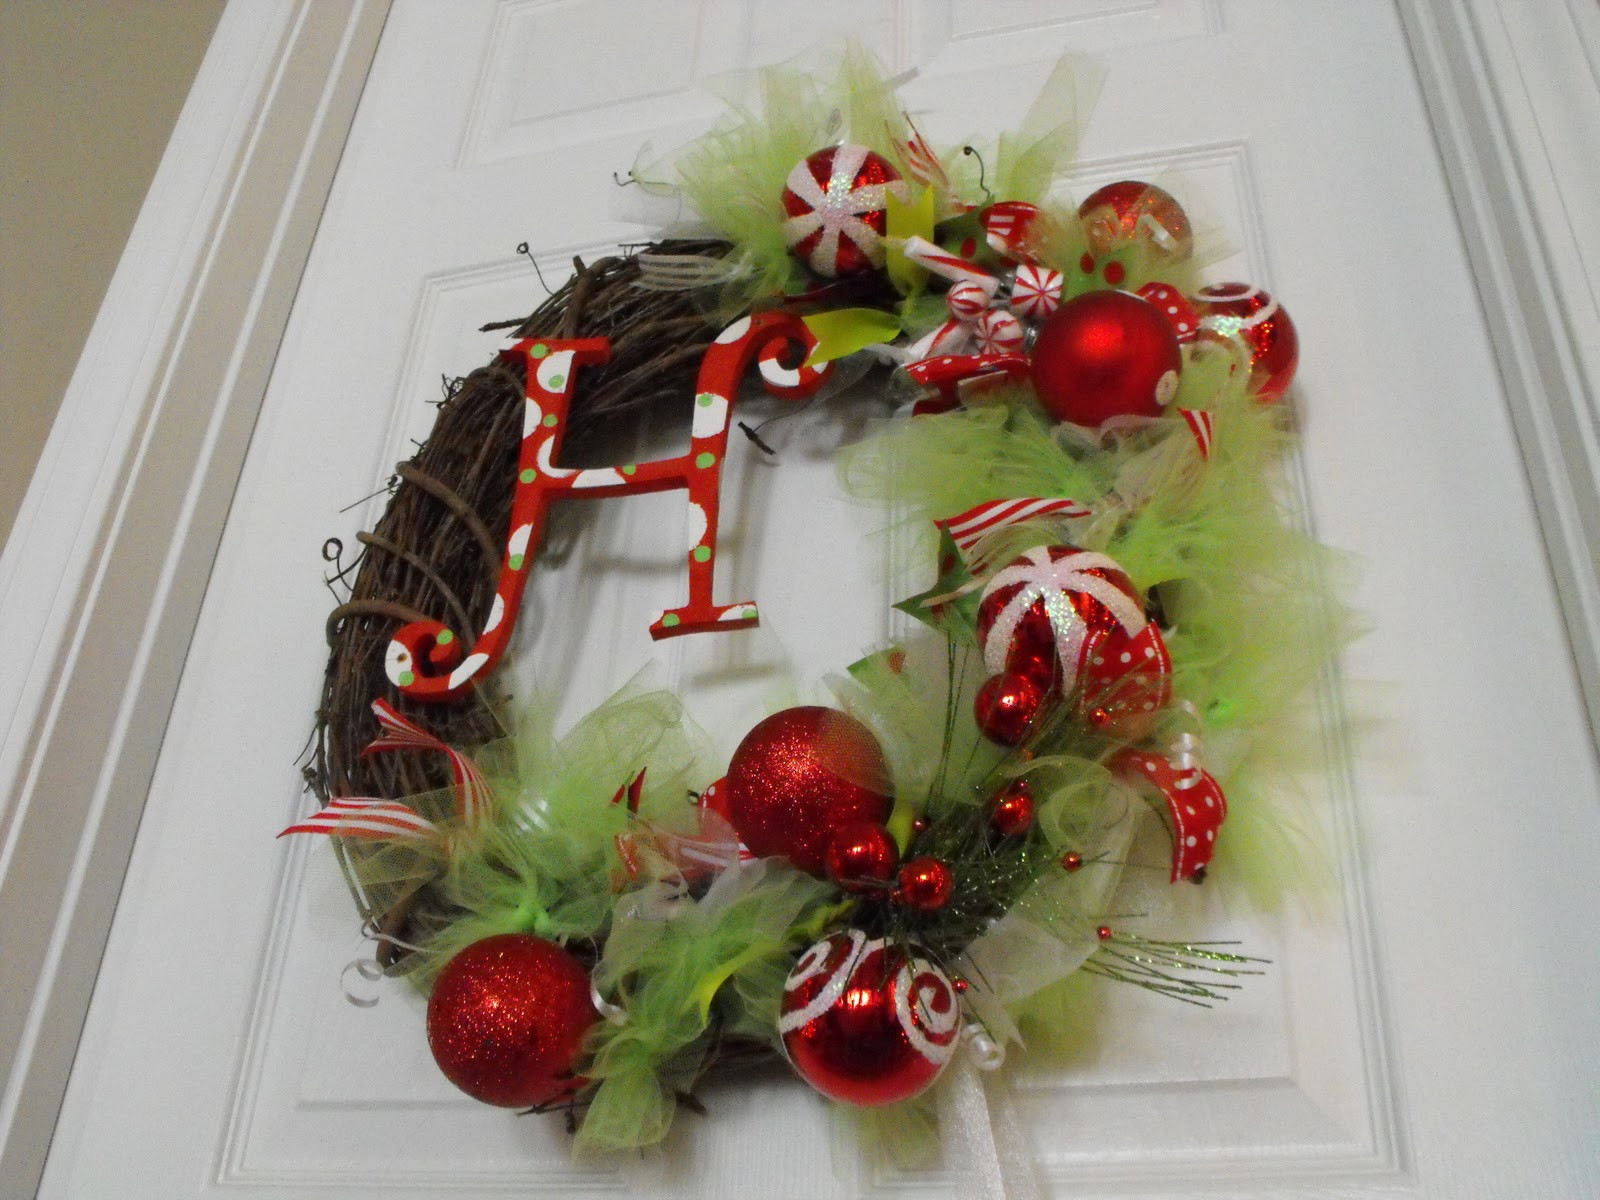 DIY Christmas Wreath Ideas
 Susie Harris DIY Christmas Wreath